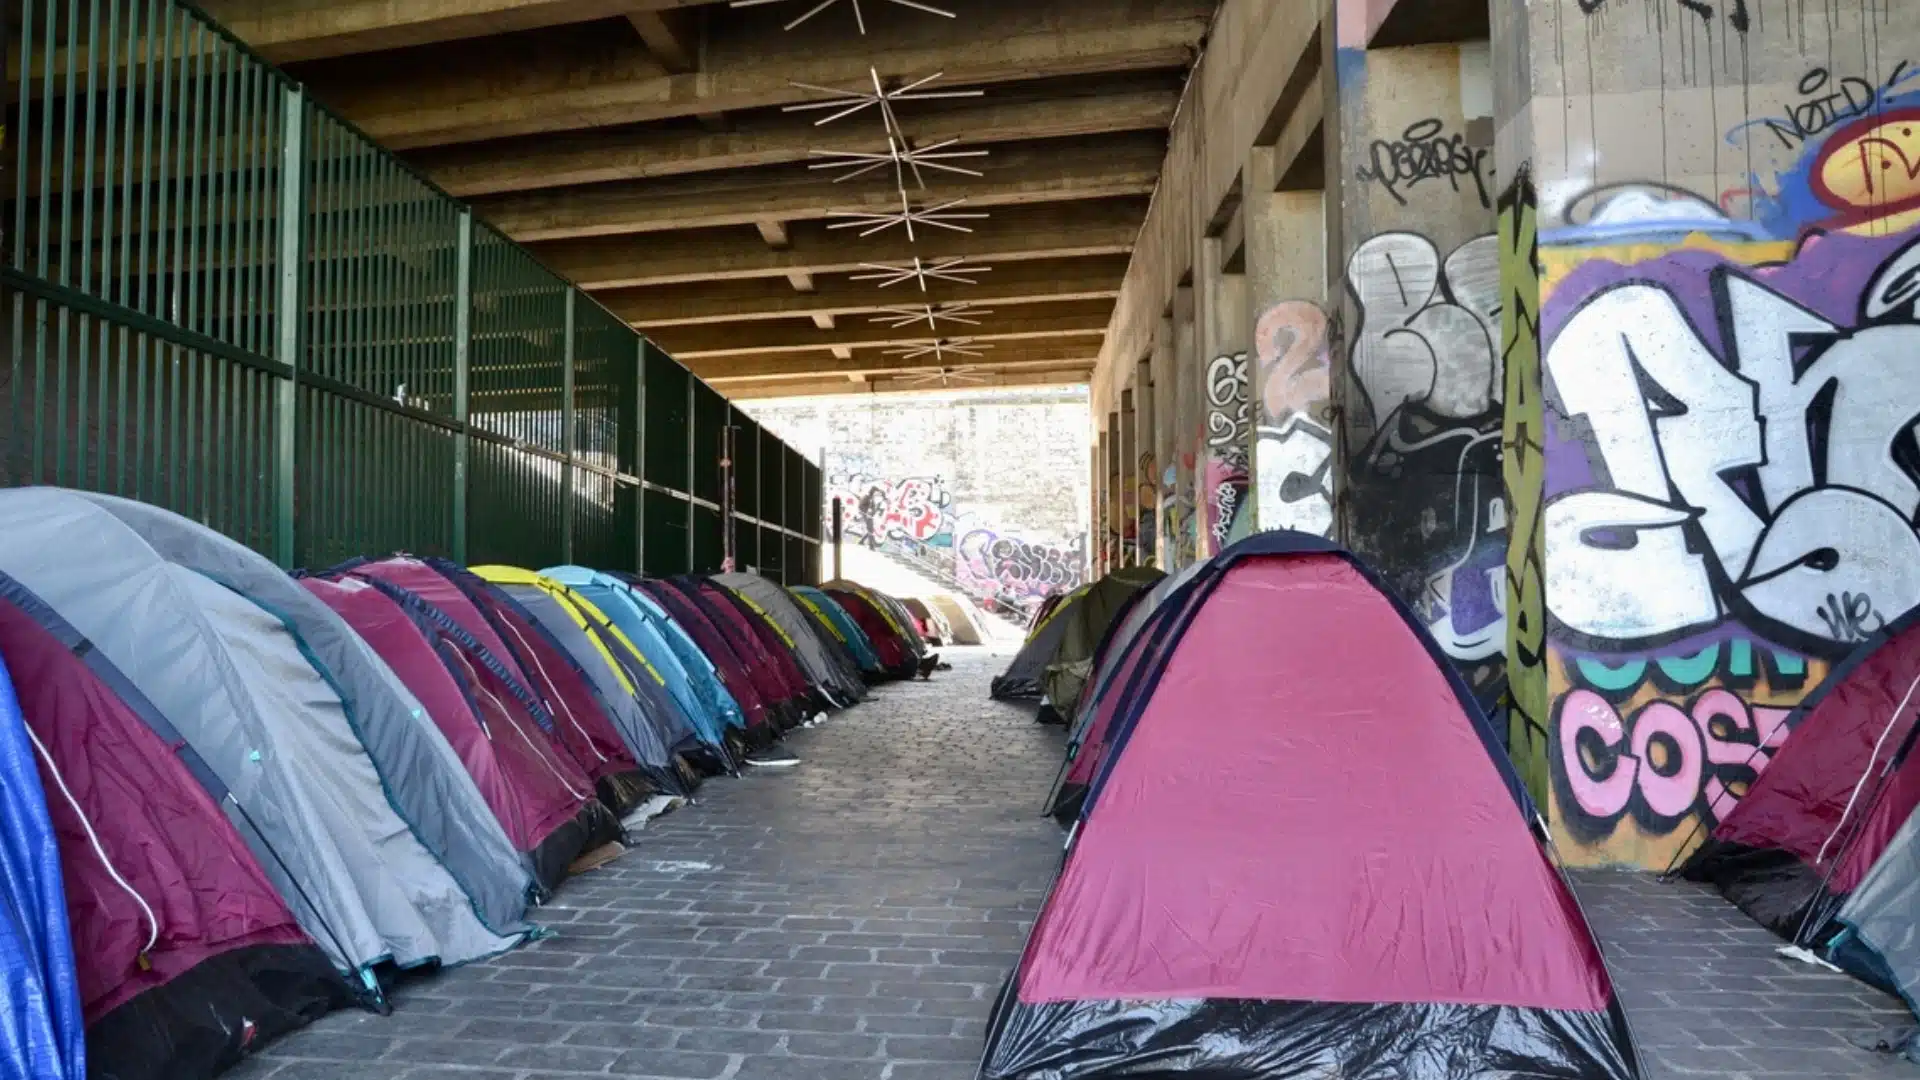 Hausse alarmante du nombre de personnes sans-abri en Europe, la France également touchée